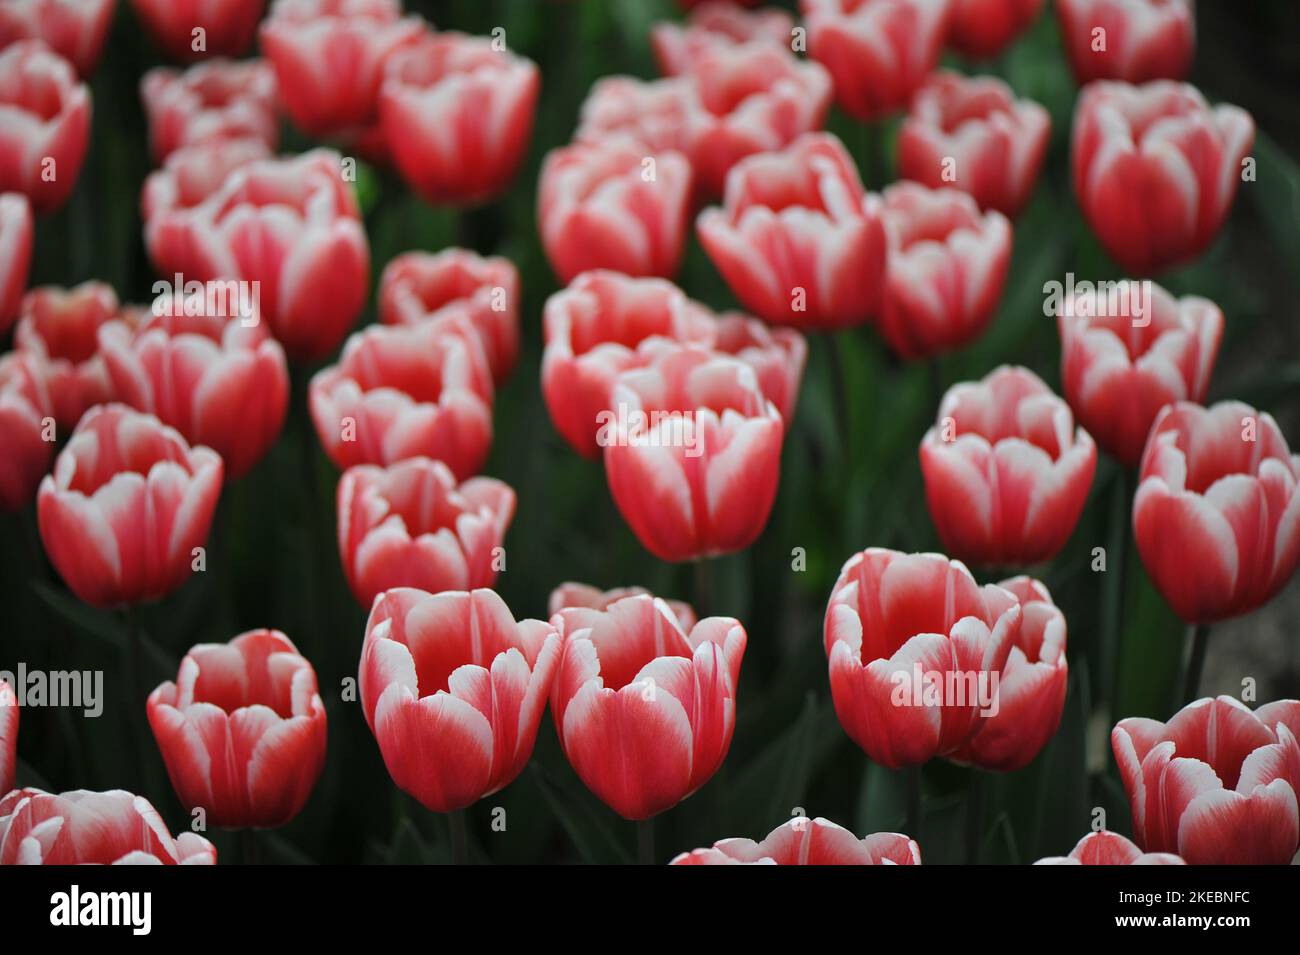 Rojo con bordes blancos Triumph tulipanes (Tulipa) florecen atemporalmente en un jardín en marzo Foto de stock